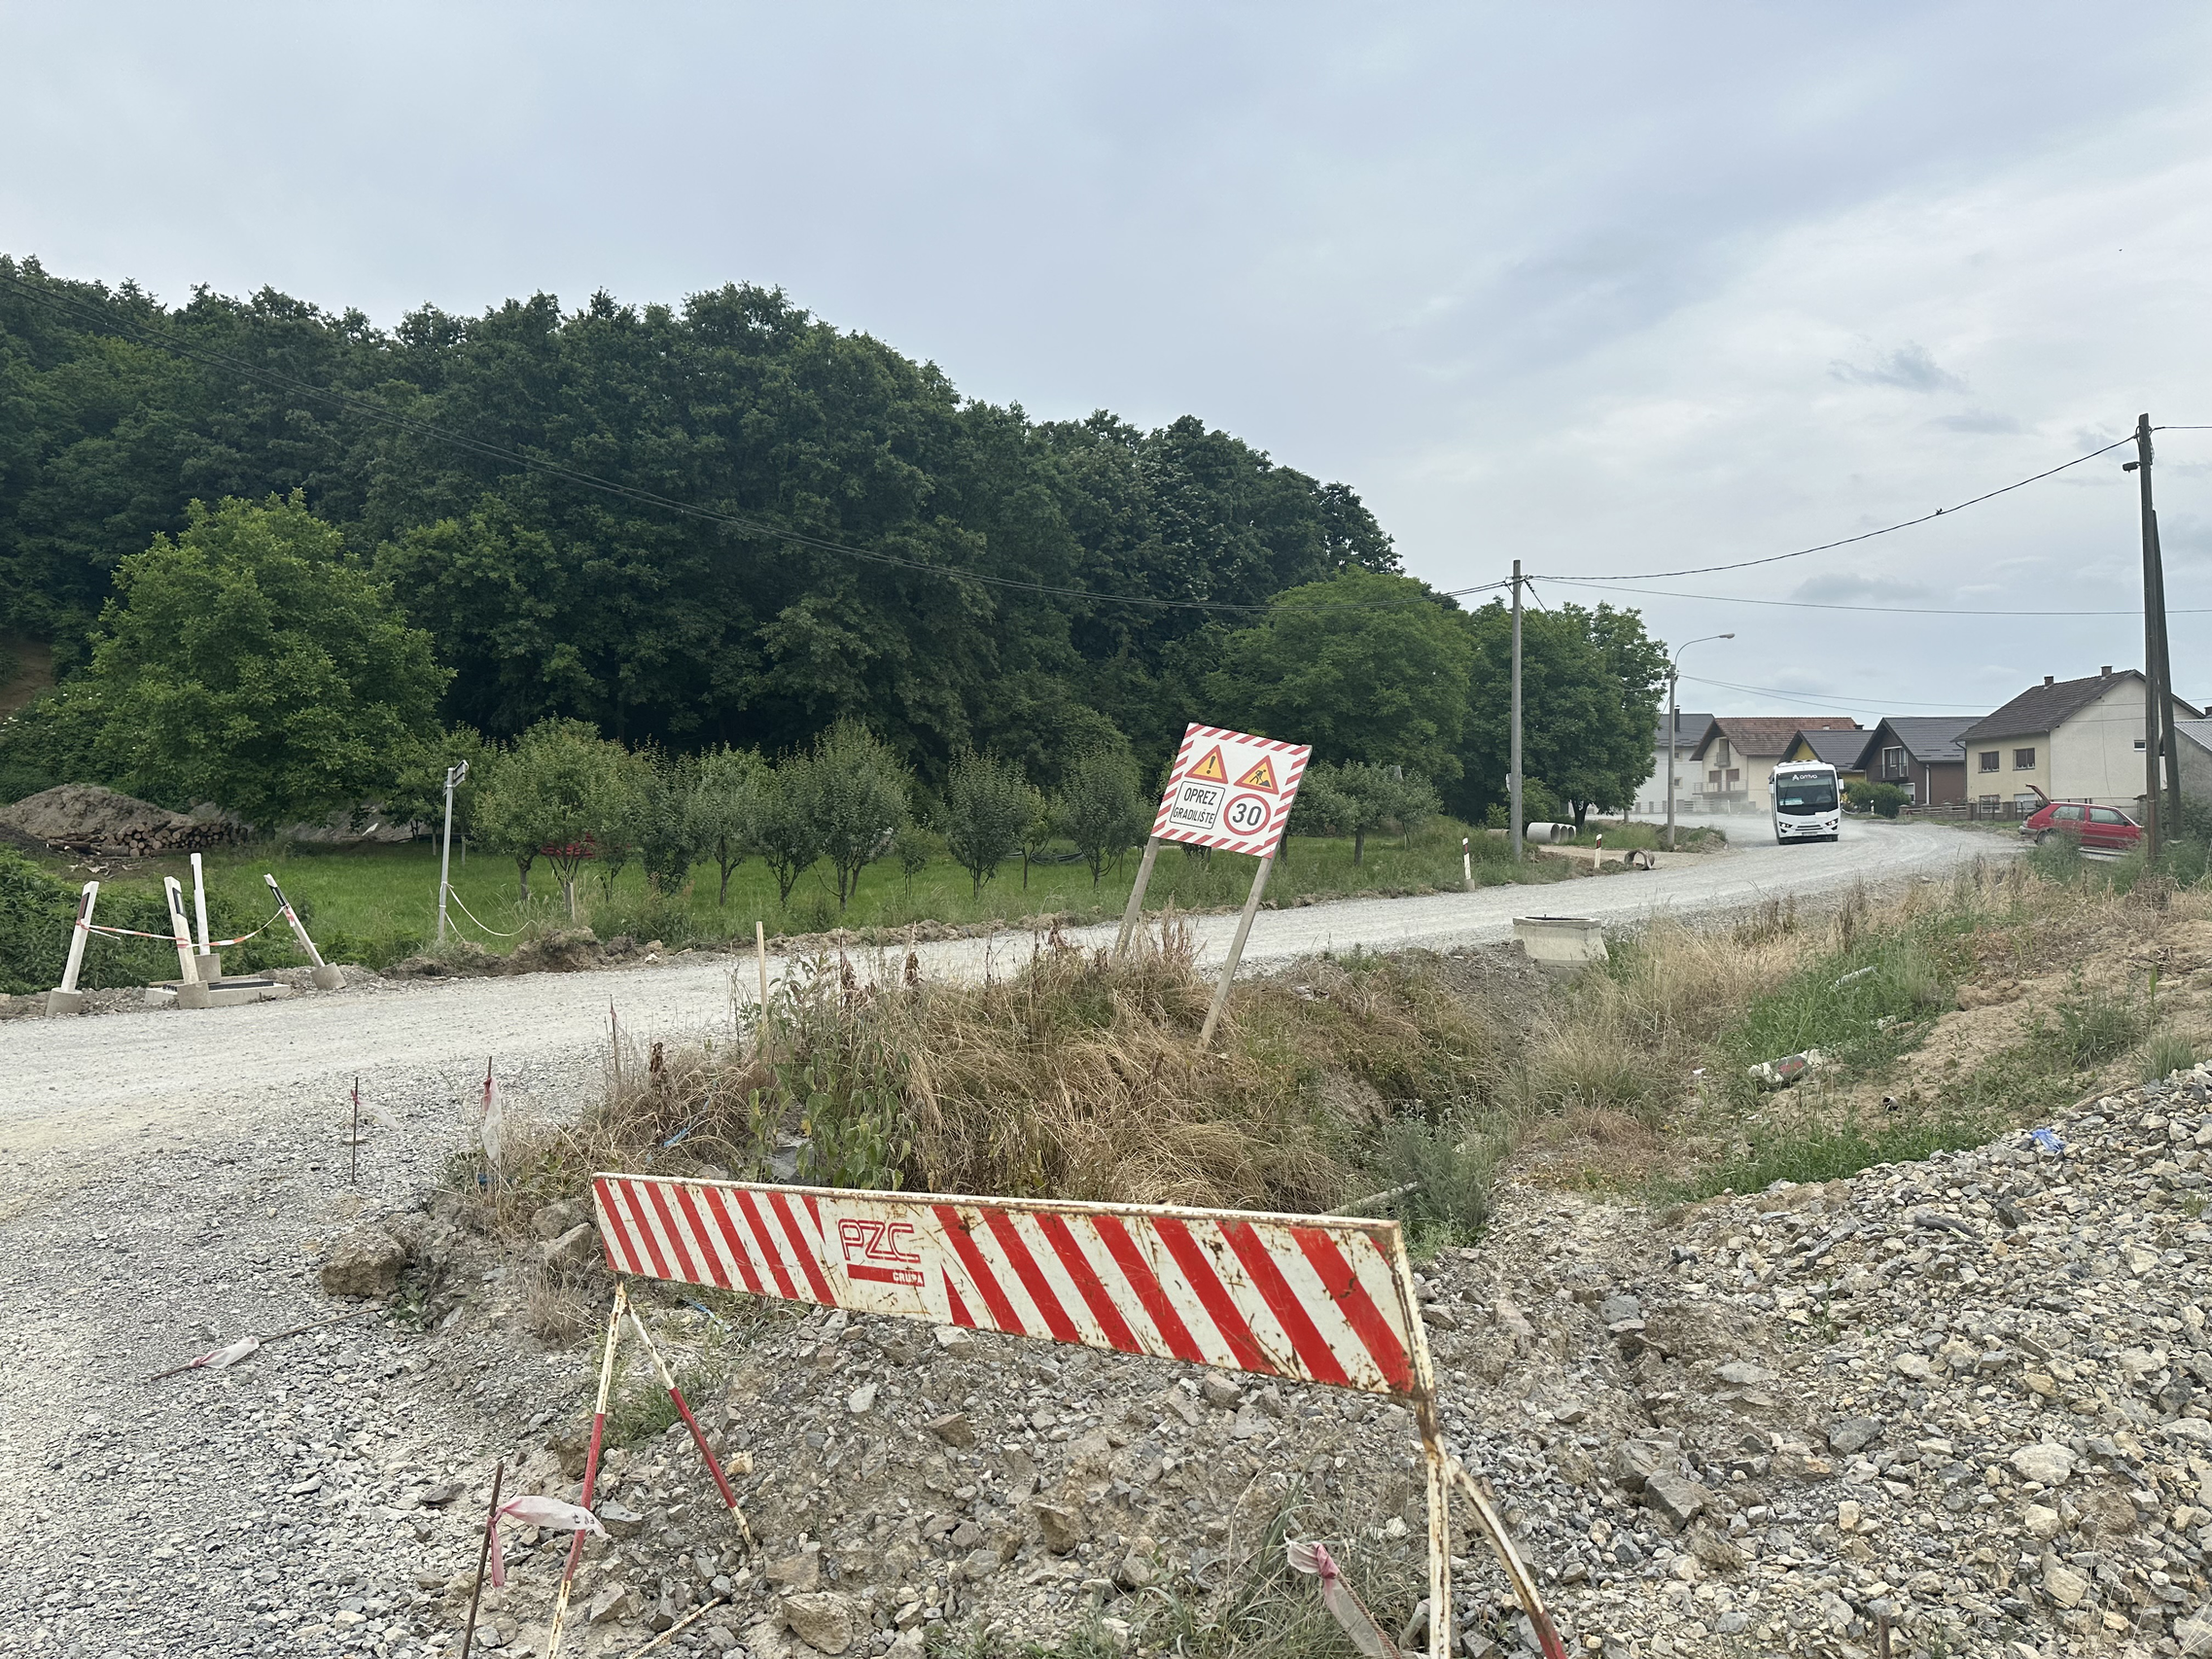 Radovi na rekonstrukciji ceste na dionici Pleternica-Frkljevci-Bilice